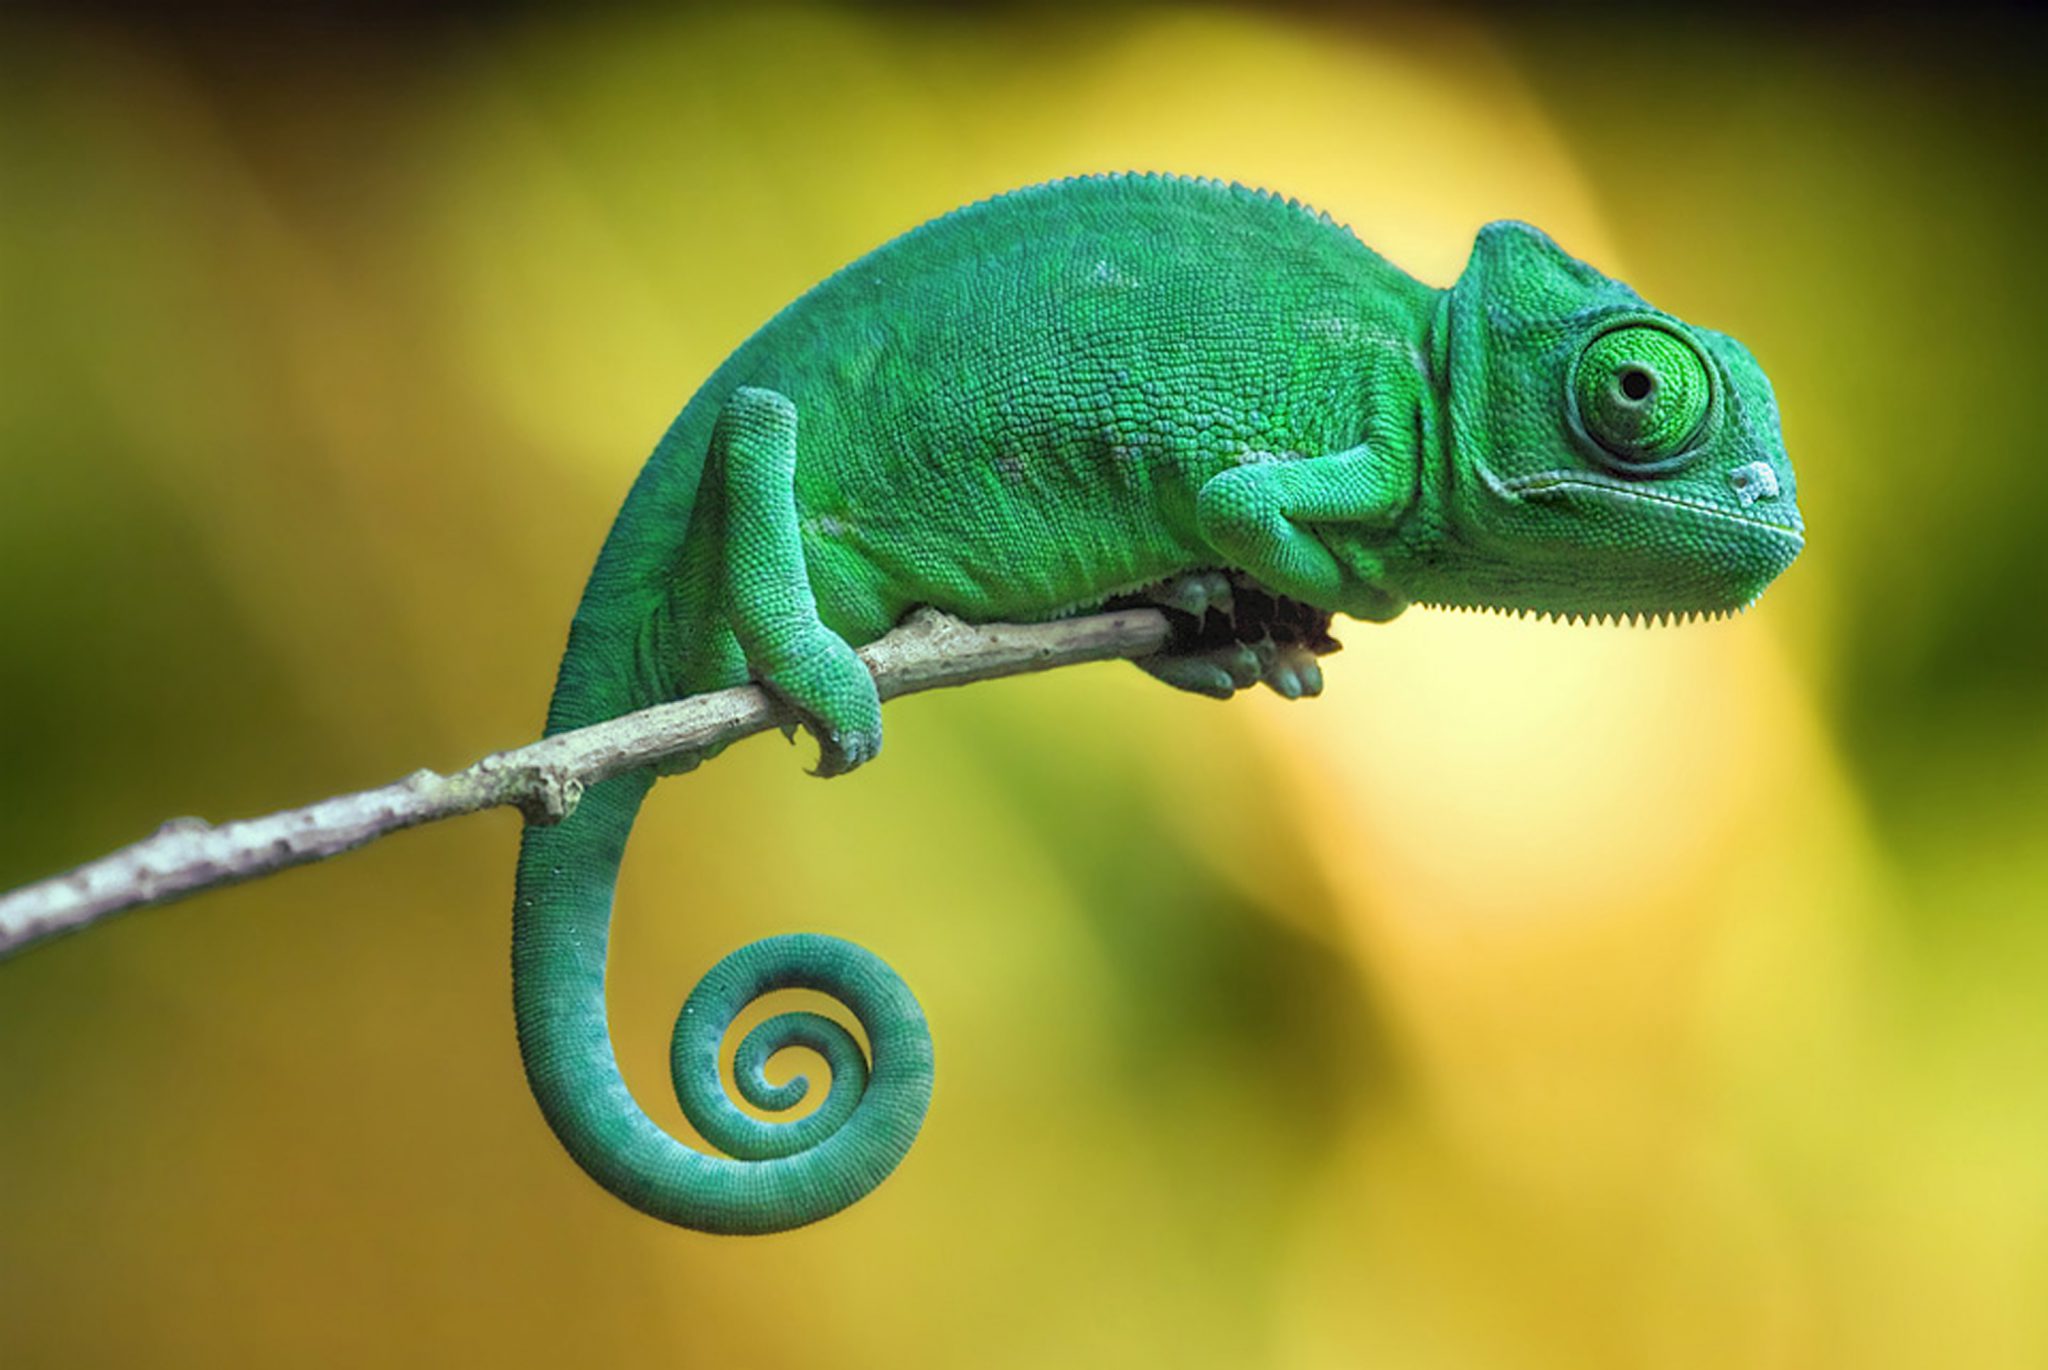 chameleon-image-7.jpg